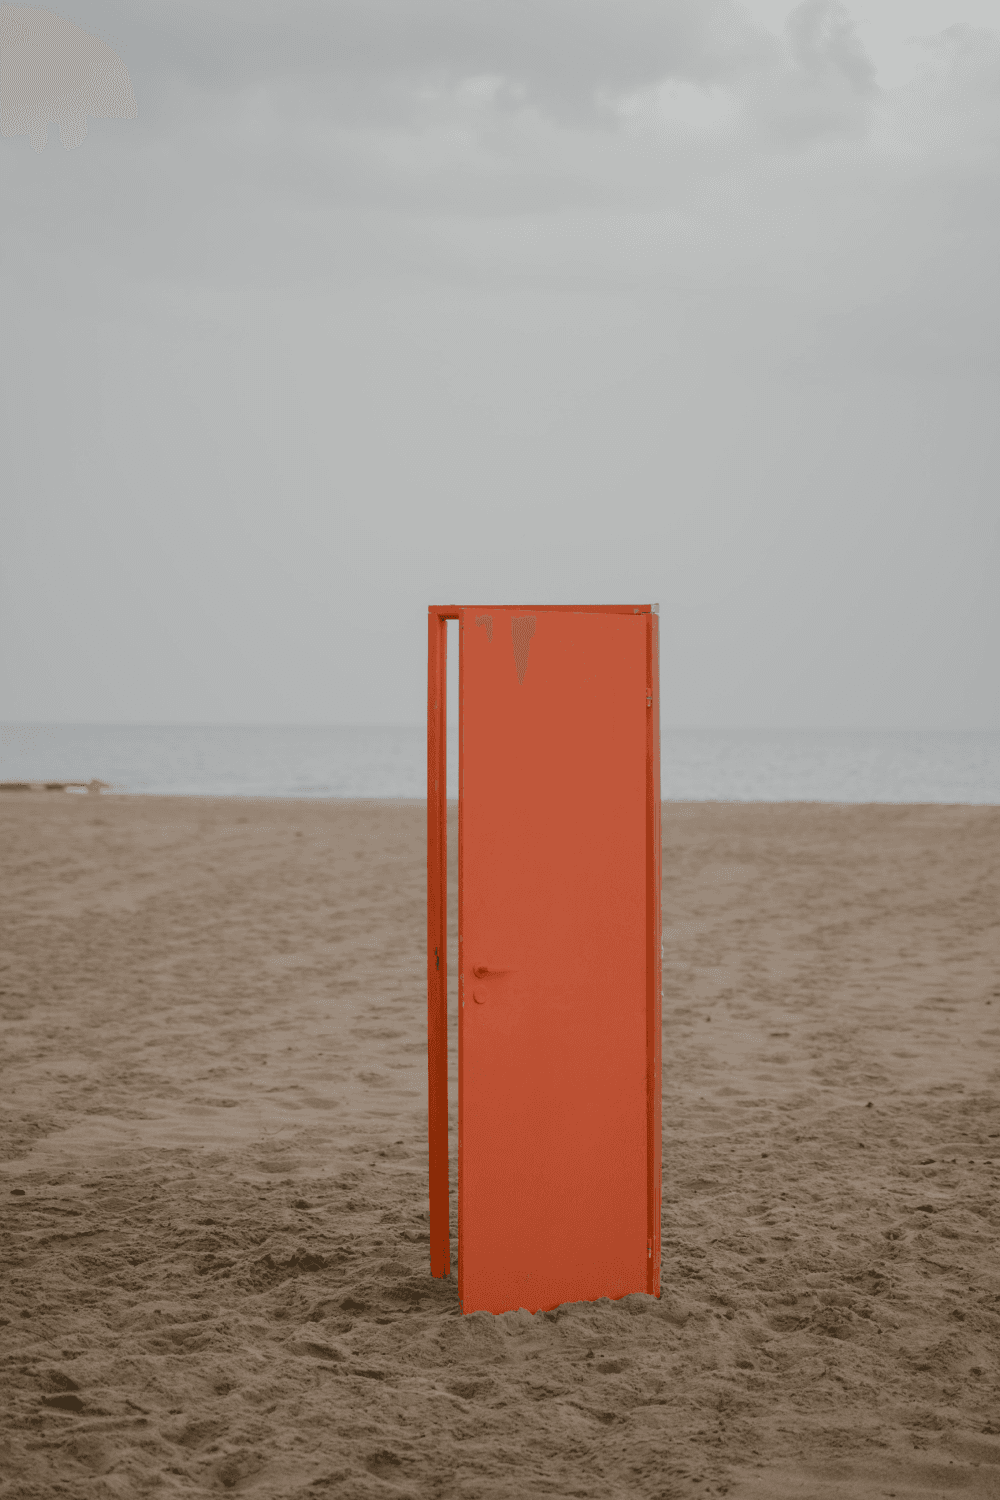 Oranje deur staat rechtop op het strand. De deur staat op een heel klein kiertje.